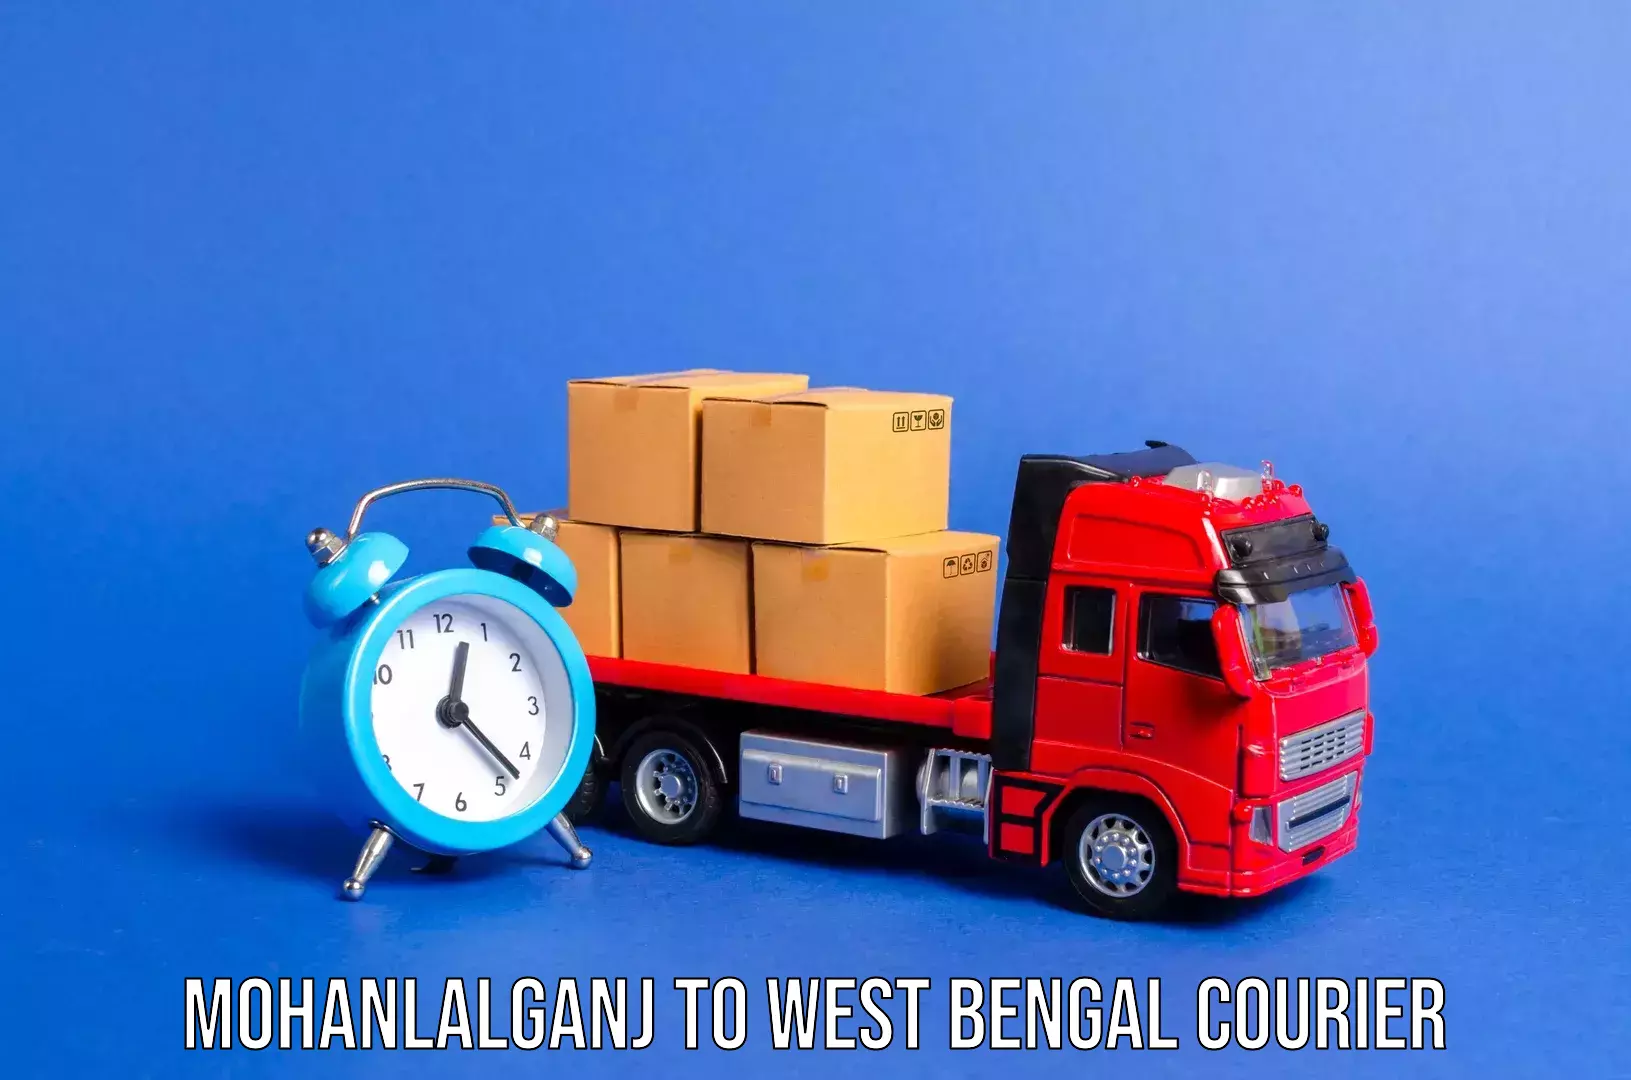 Luggage transport company Mohanlalganj to West Bengal